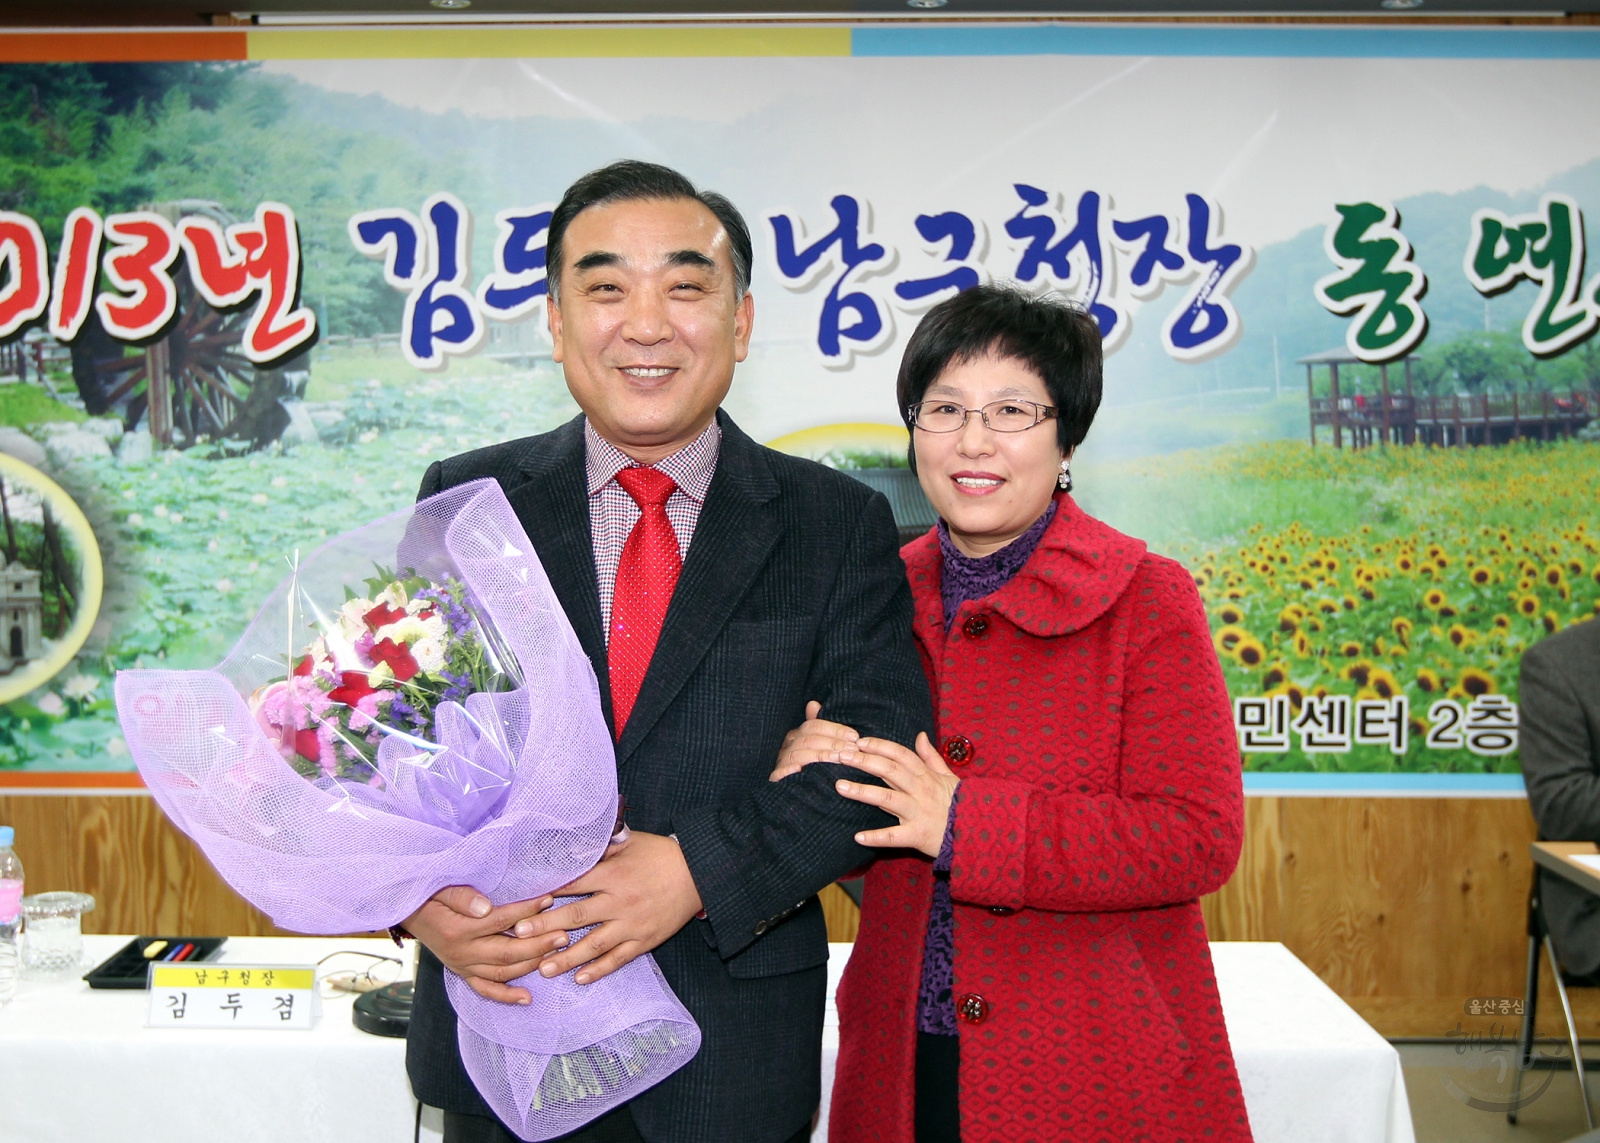 2013년 김두겸 남구청장 선암동 연두 순시 의 사진